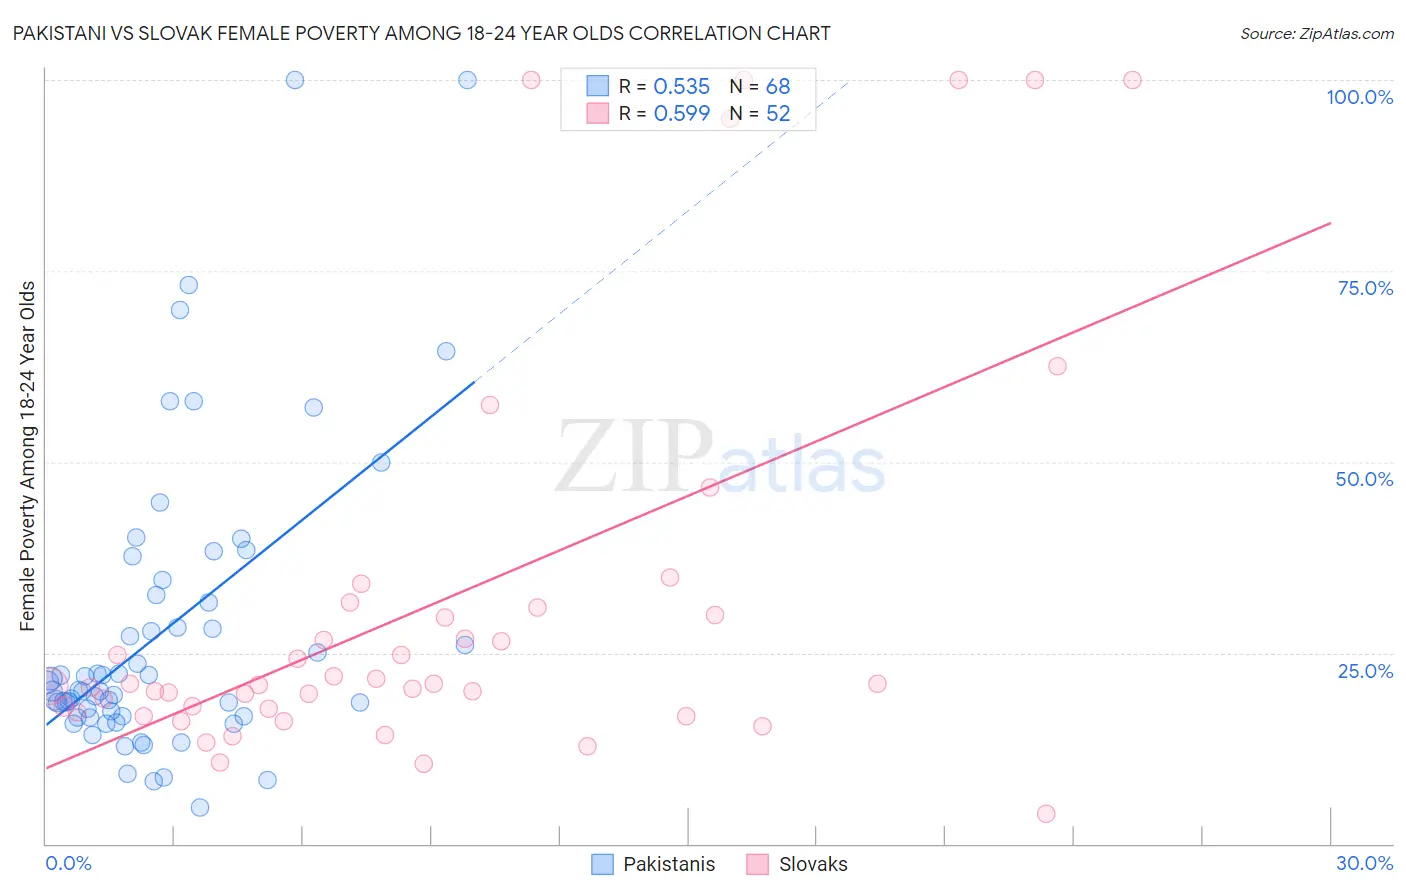 Pakistani vs Slovak Female Poverty Among 18-24 Year Olds